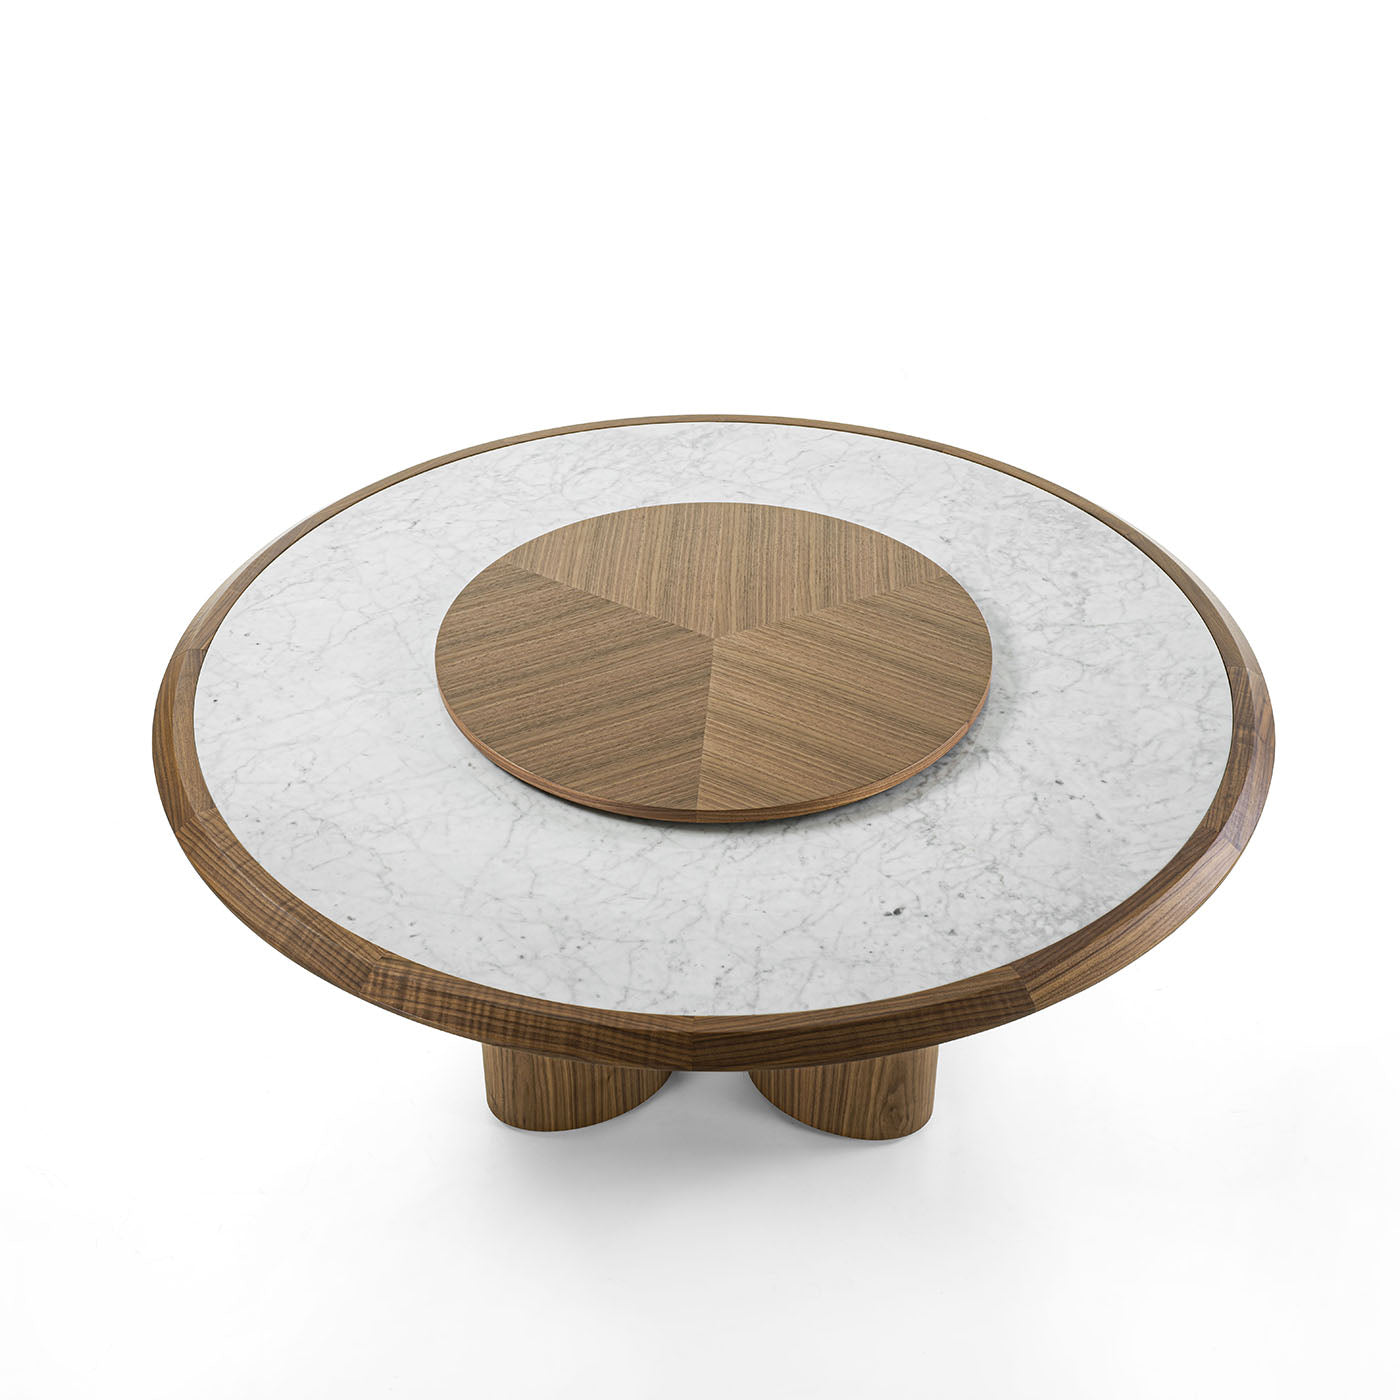 Diamantener Tisch mit Carrara-Marmorplatte und hölzerner Ablagefläche - Alternative Ansicht 1